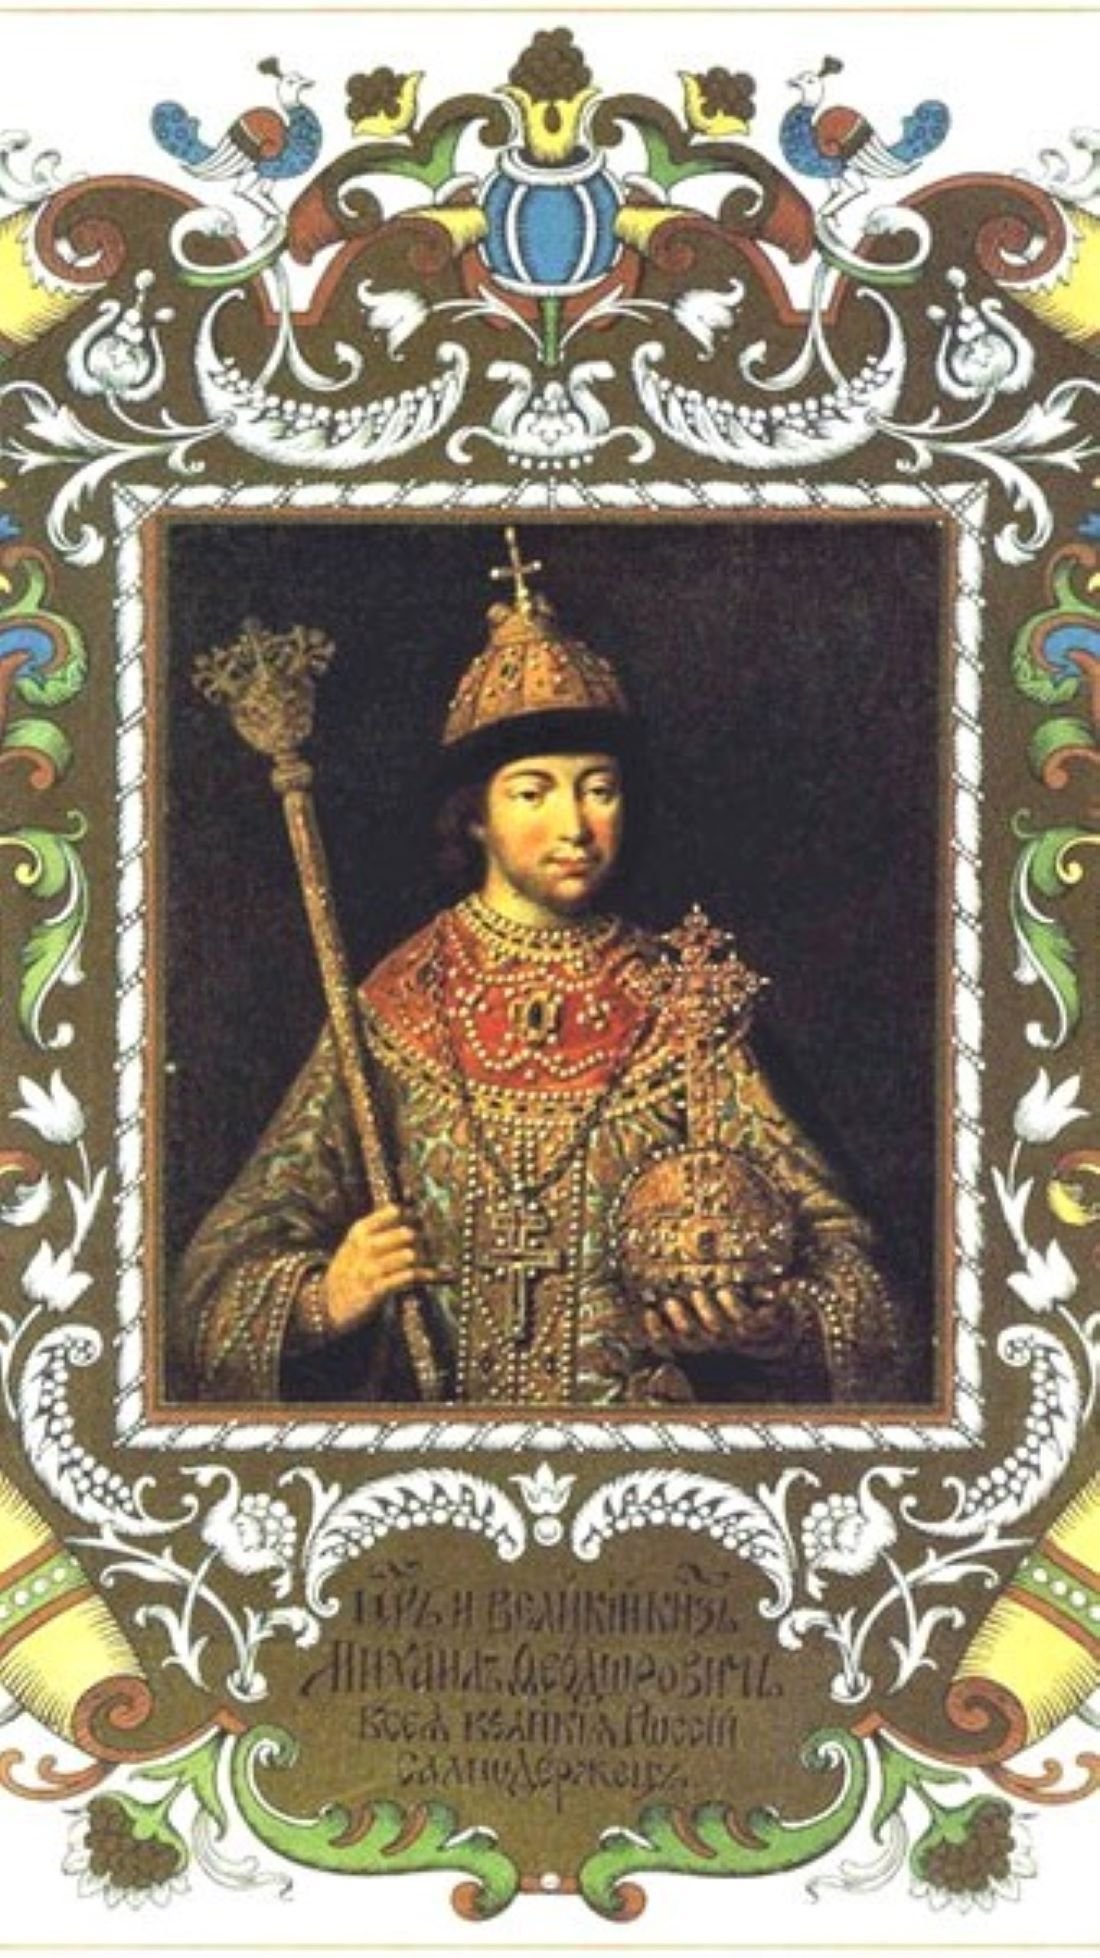 Мотивы царей. Портрет царя Михаила Федоровича Романова.